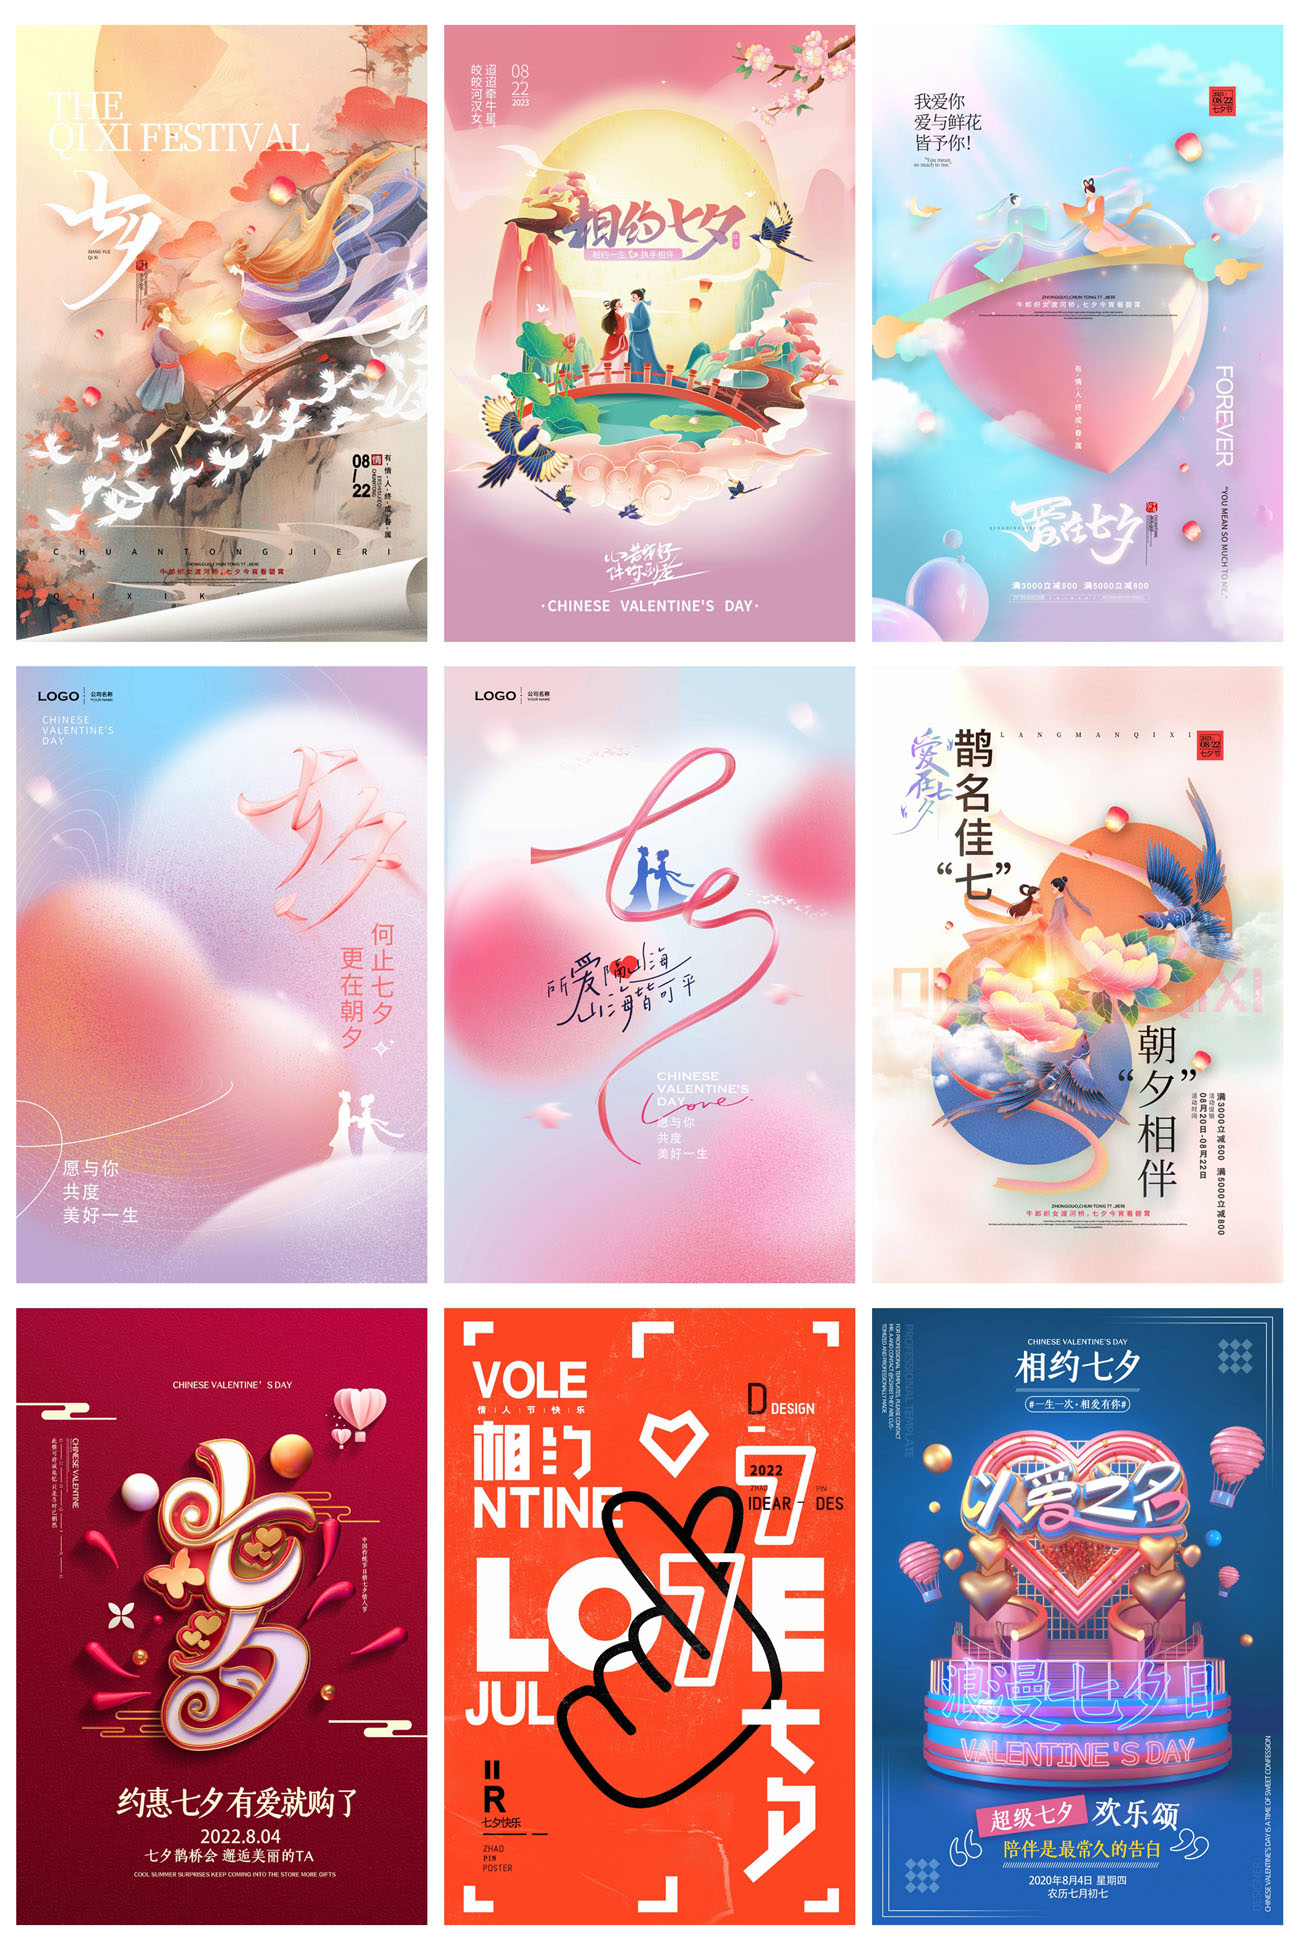 36款七夕情人节电商促销宣传海报PSD模板 设计素材 第8张